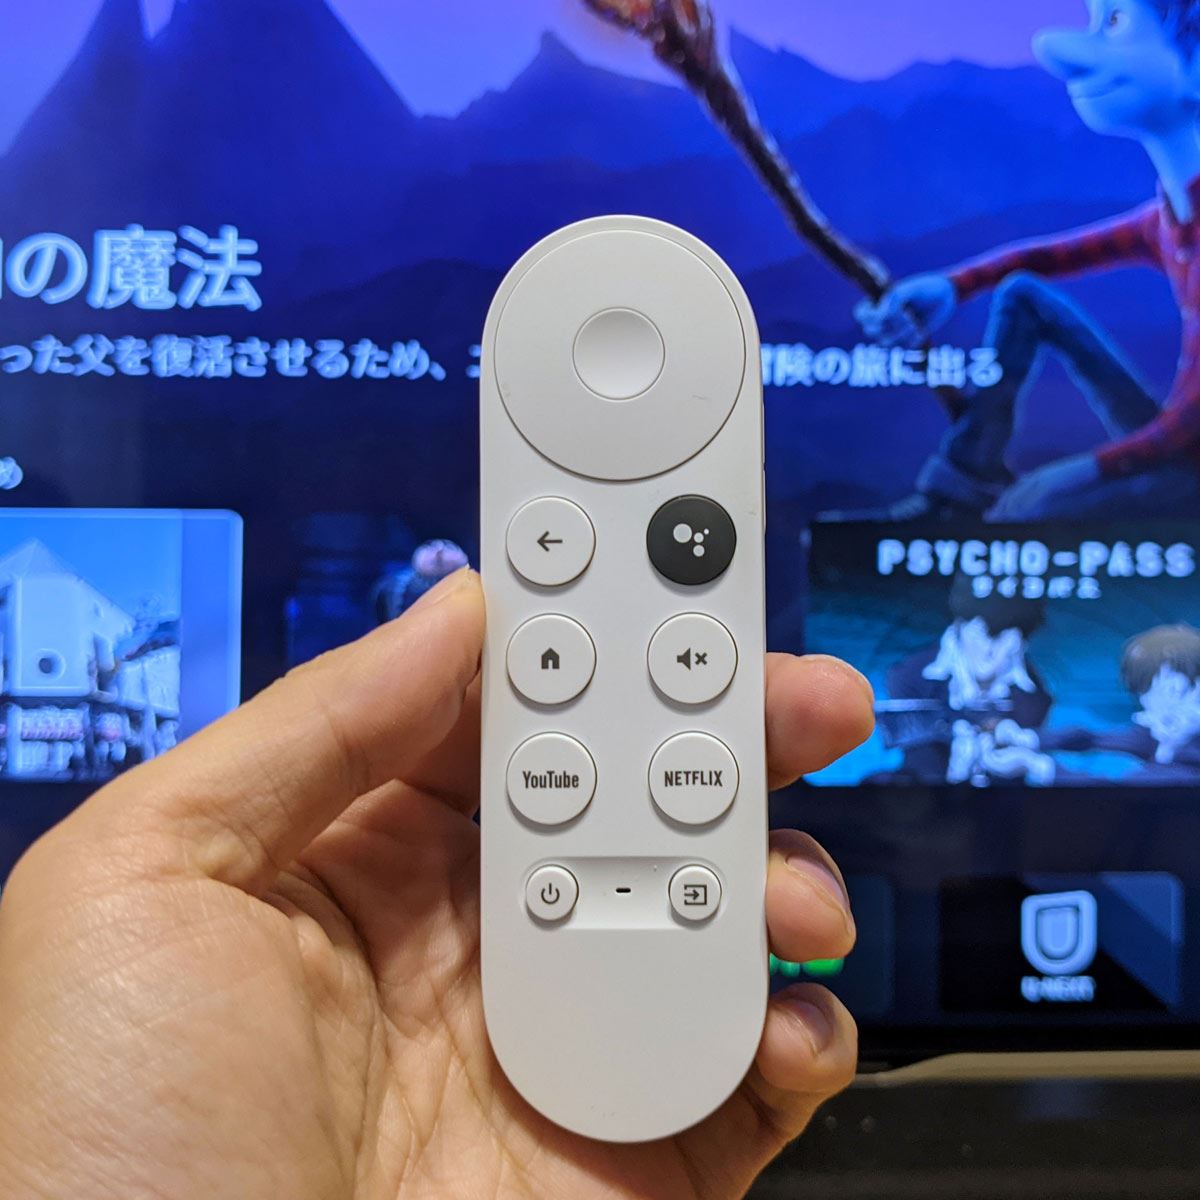 Google Chromecast with Google TV リモコン付き